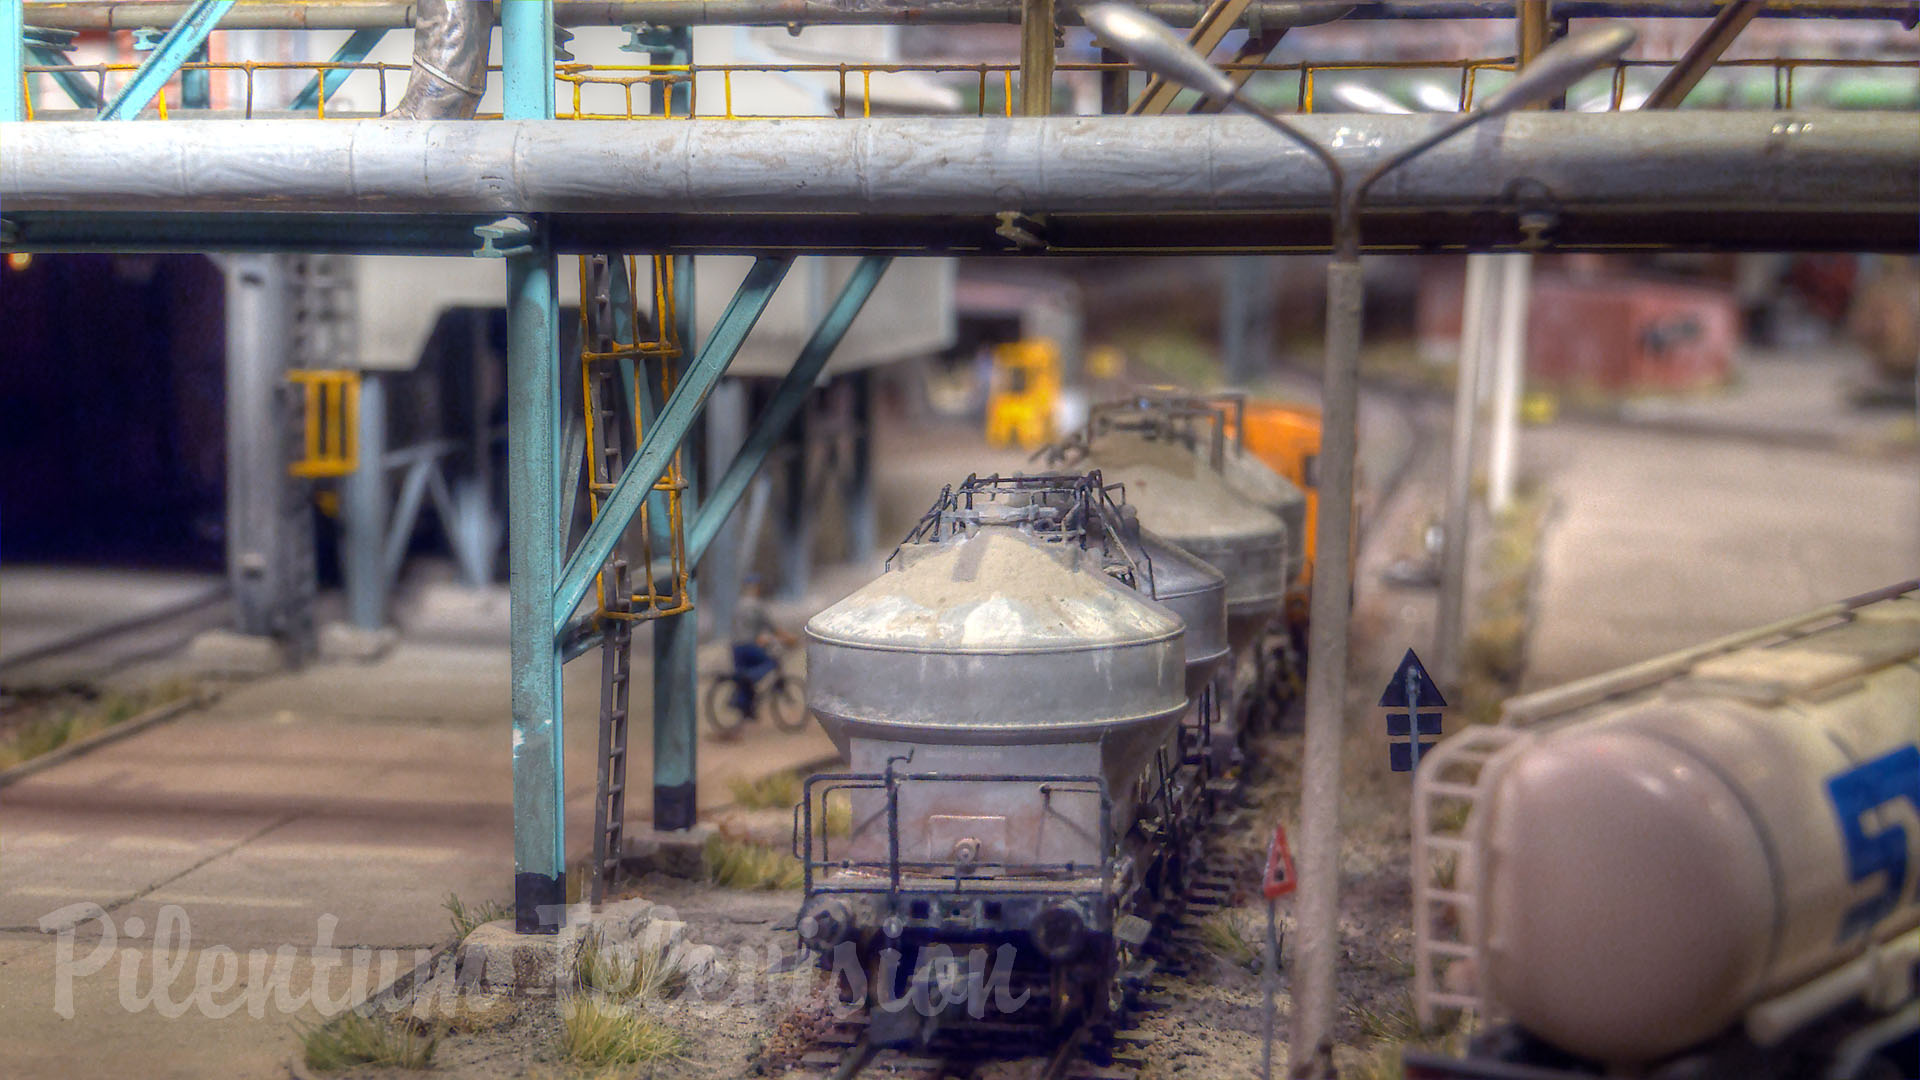 L’une des plus authentiques maquettes ferroviaires d’une usine chimique d’Allemagne de l’Est